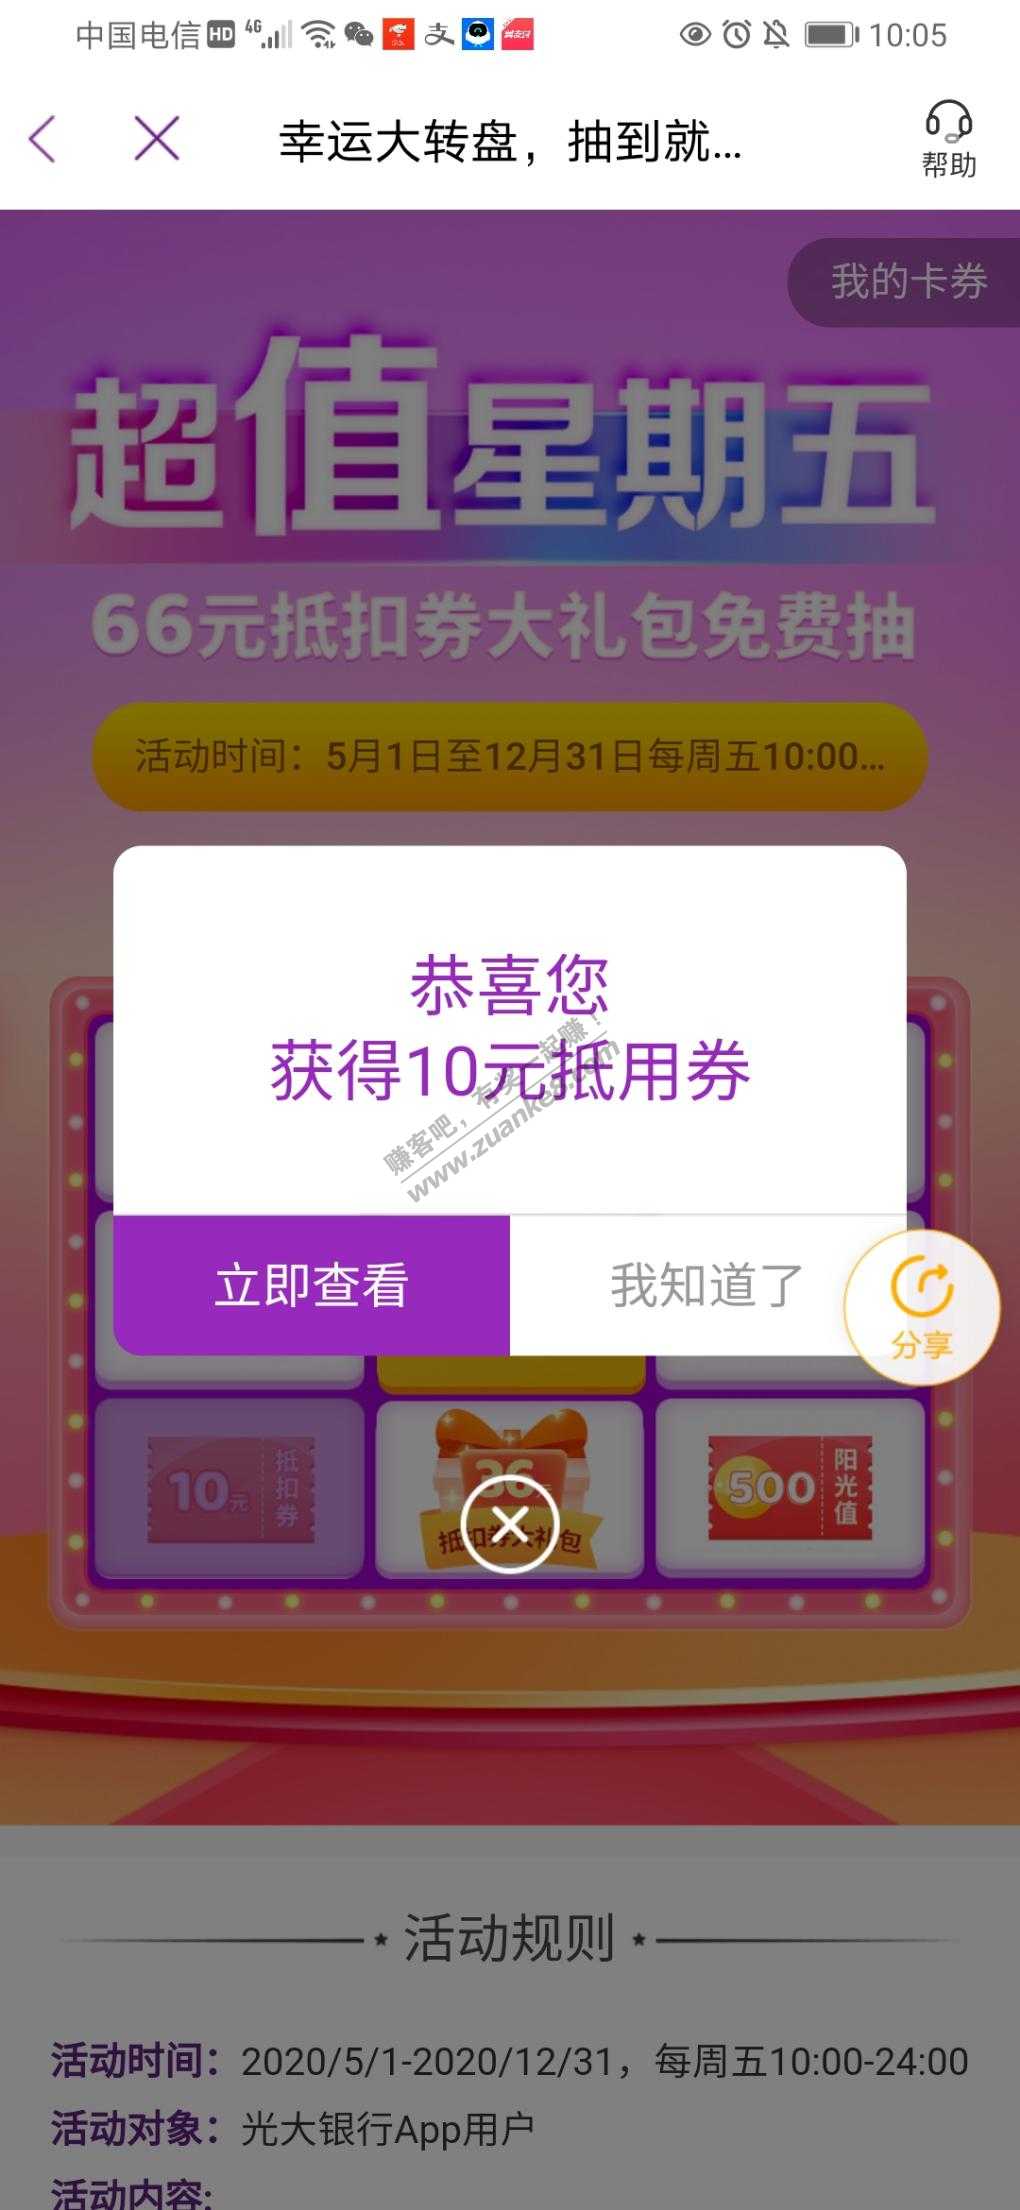 光大app——生活——超值星期五-抽66元抵扣券-惠小助(52huixz.com)